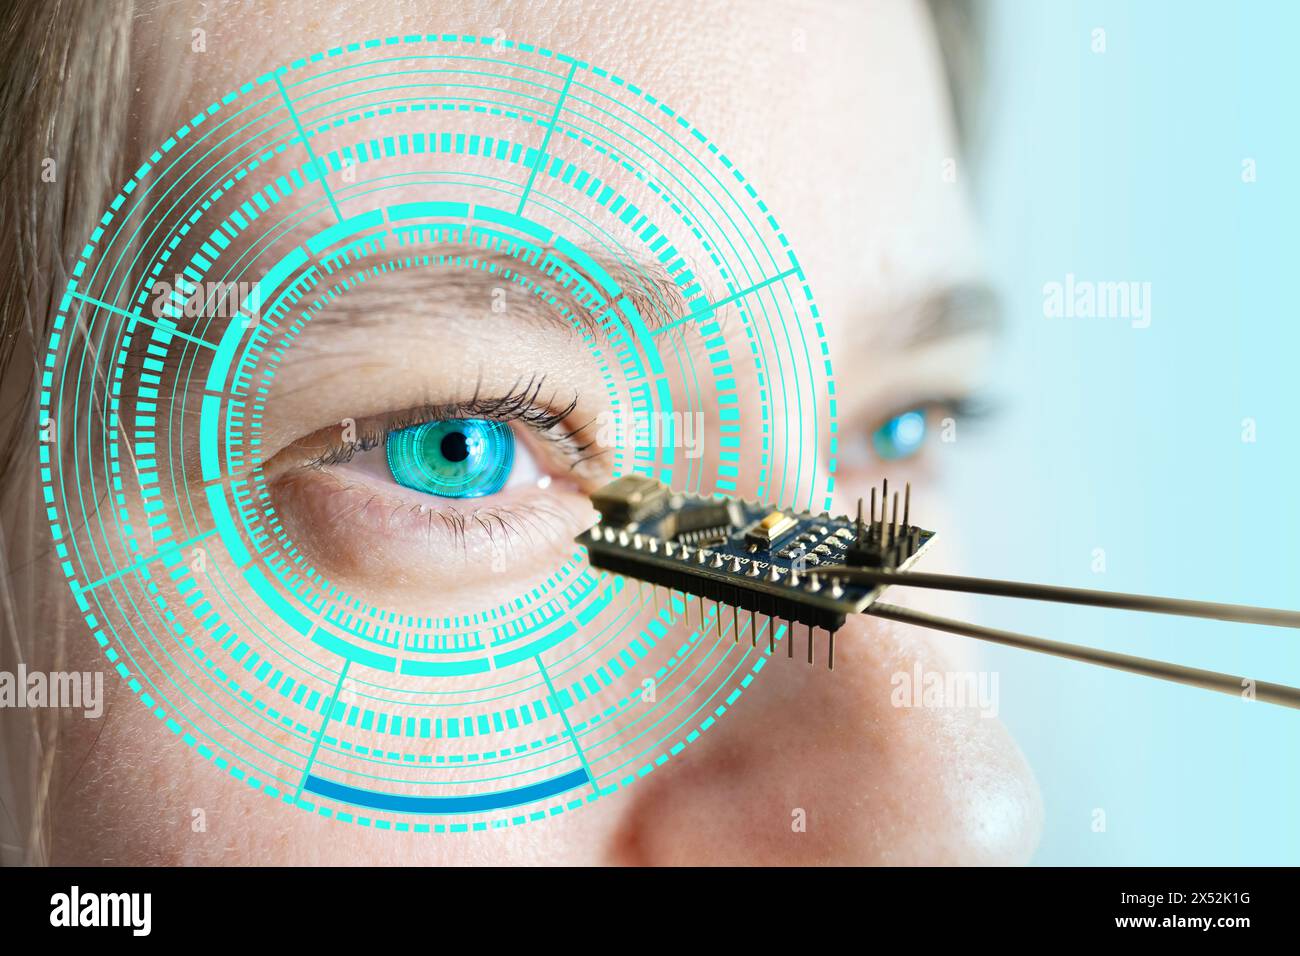 Installazione di chip elettronici in occhio bionico umano, neuroprotesico, tecnologia all'avanguardia, progresso tecnologico visionario, ripristinare la vista Foto Stock